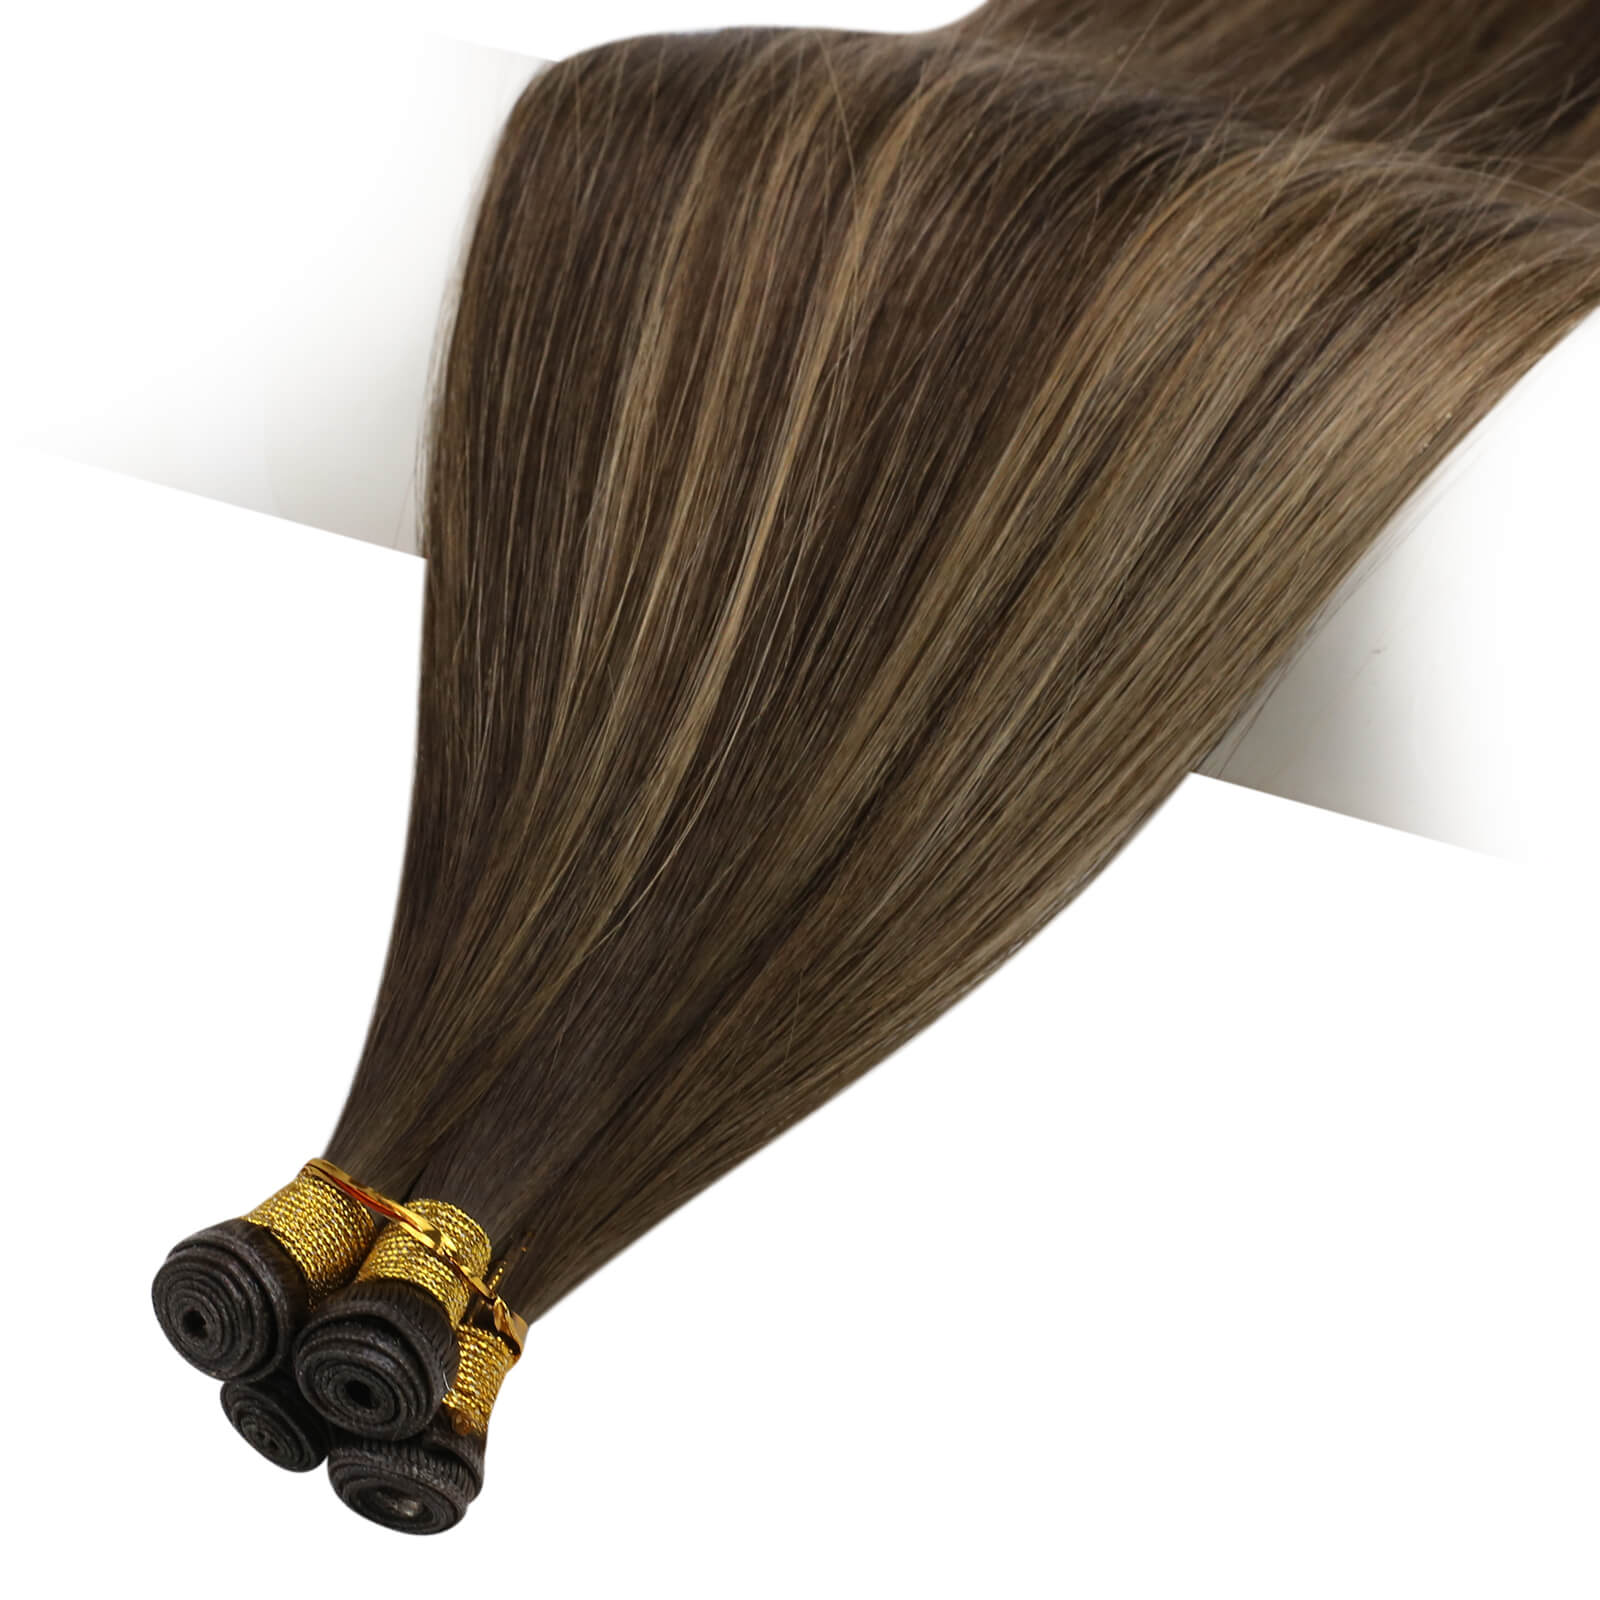 genius weft hair extensions virgin hair balayage brown with blonde